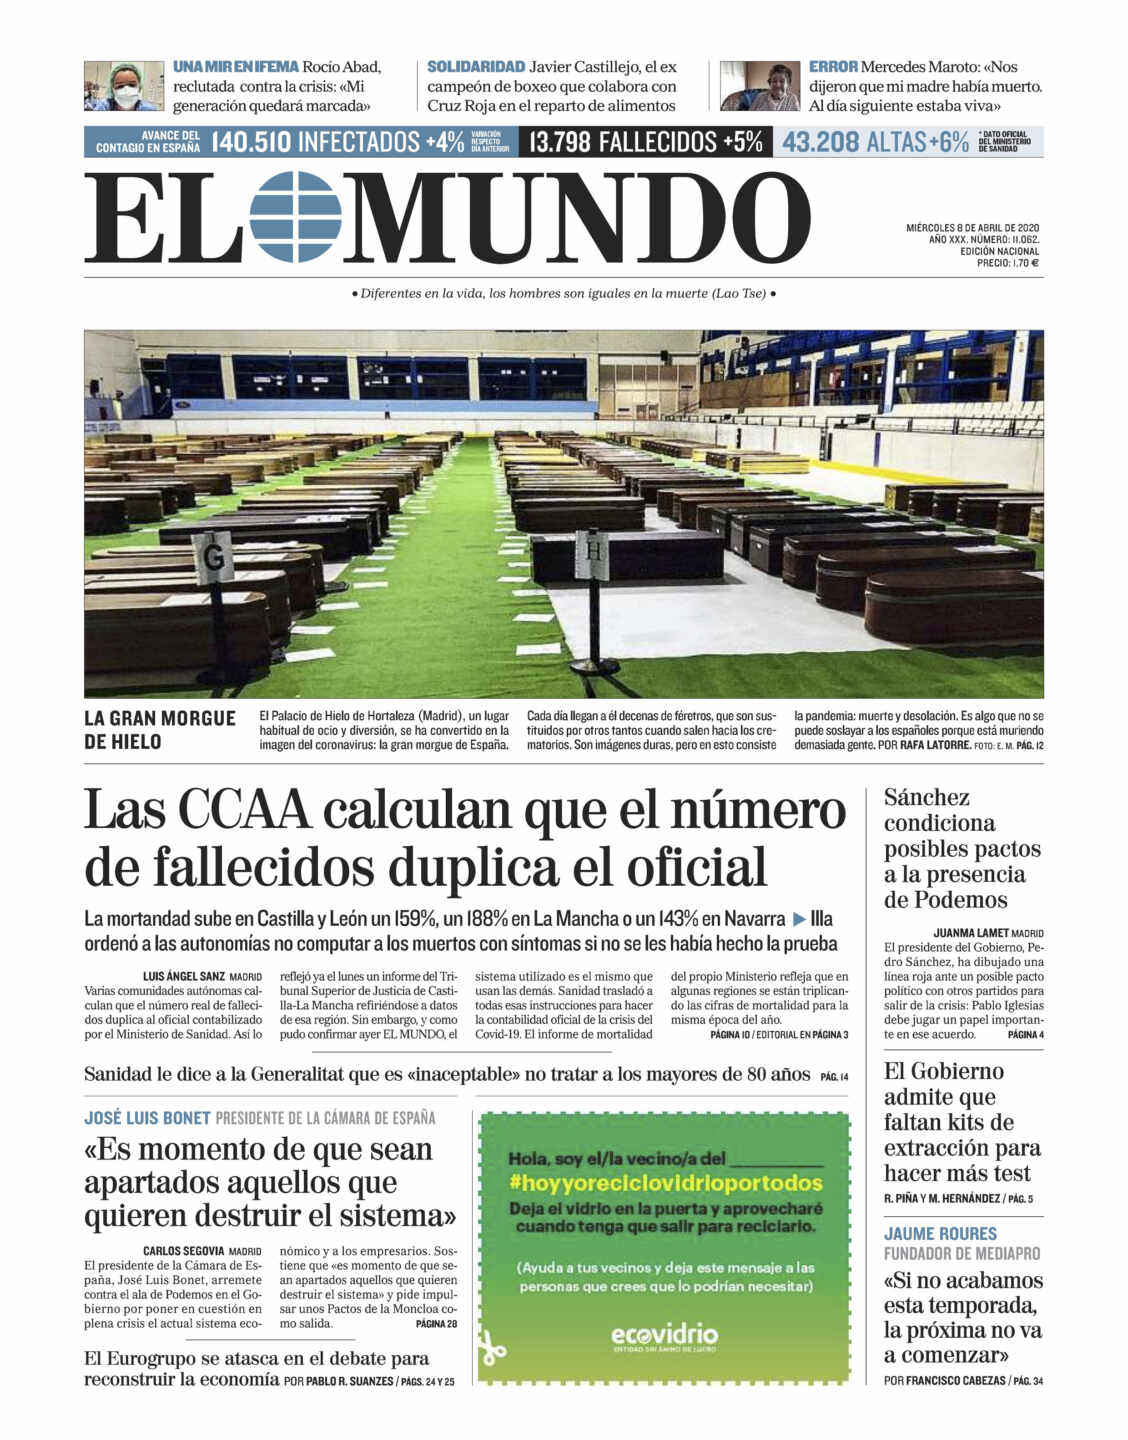 'El Mundo' publica la foto de los féretros en la morgue del Palacio de Hielo de Madrid